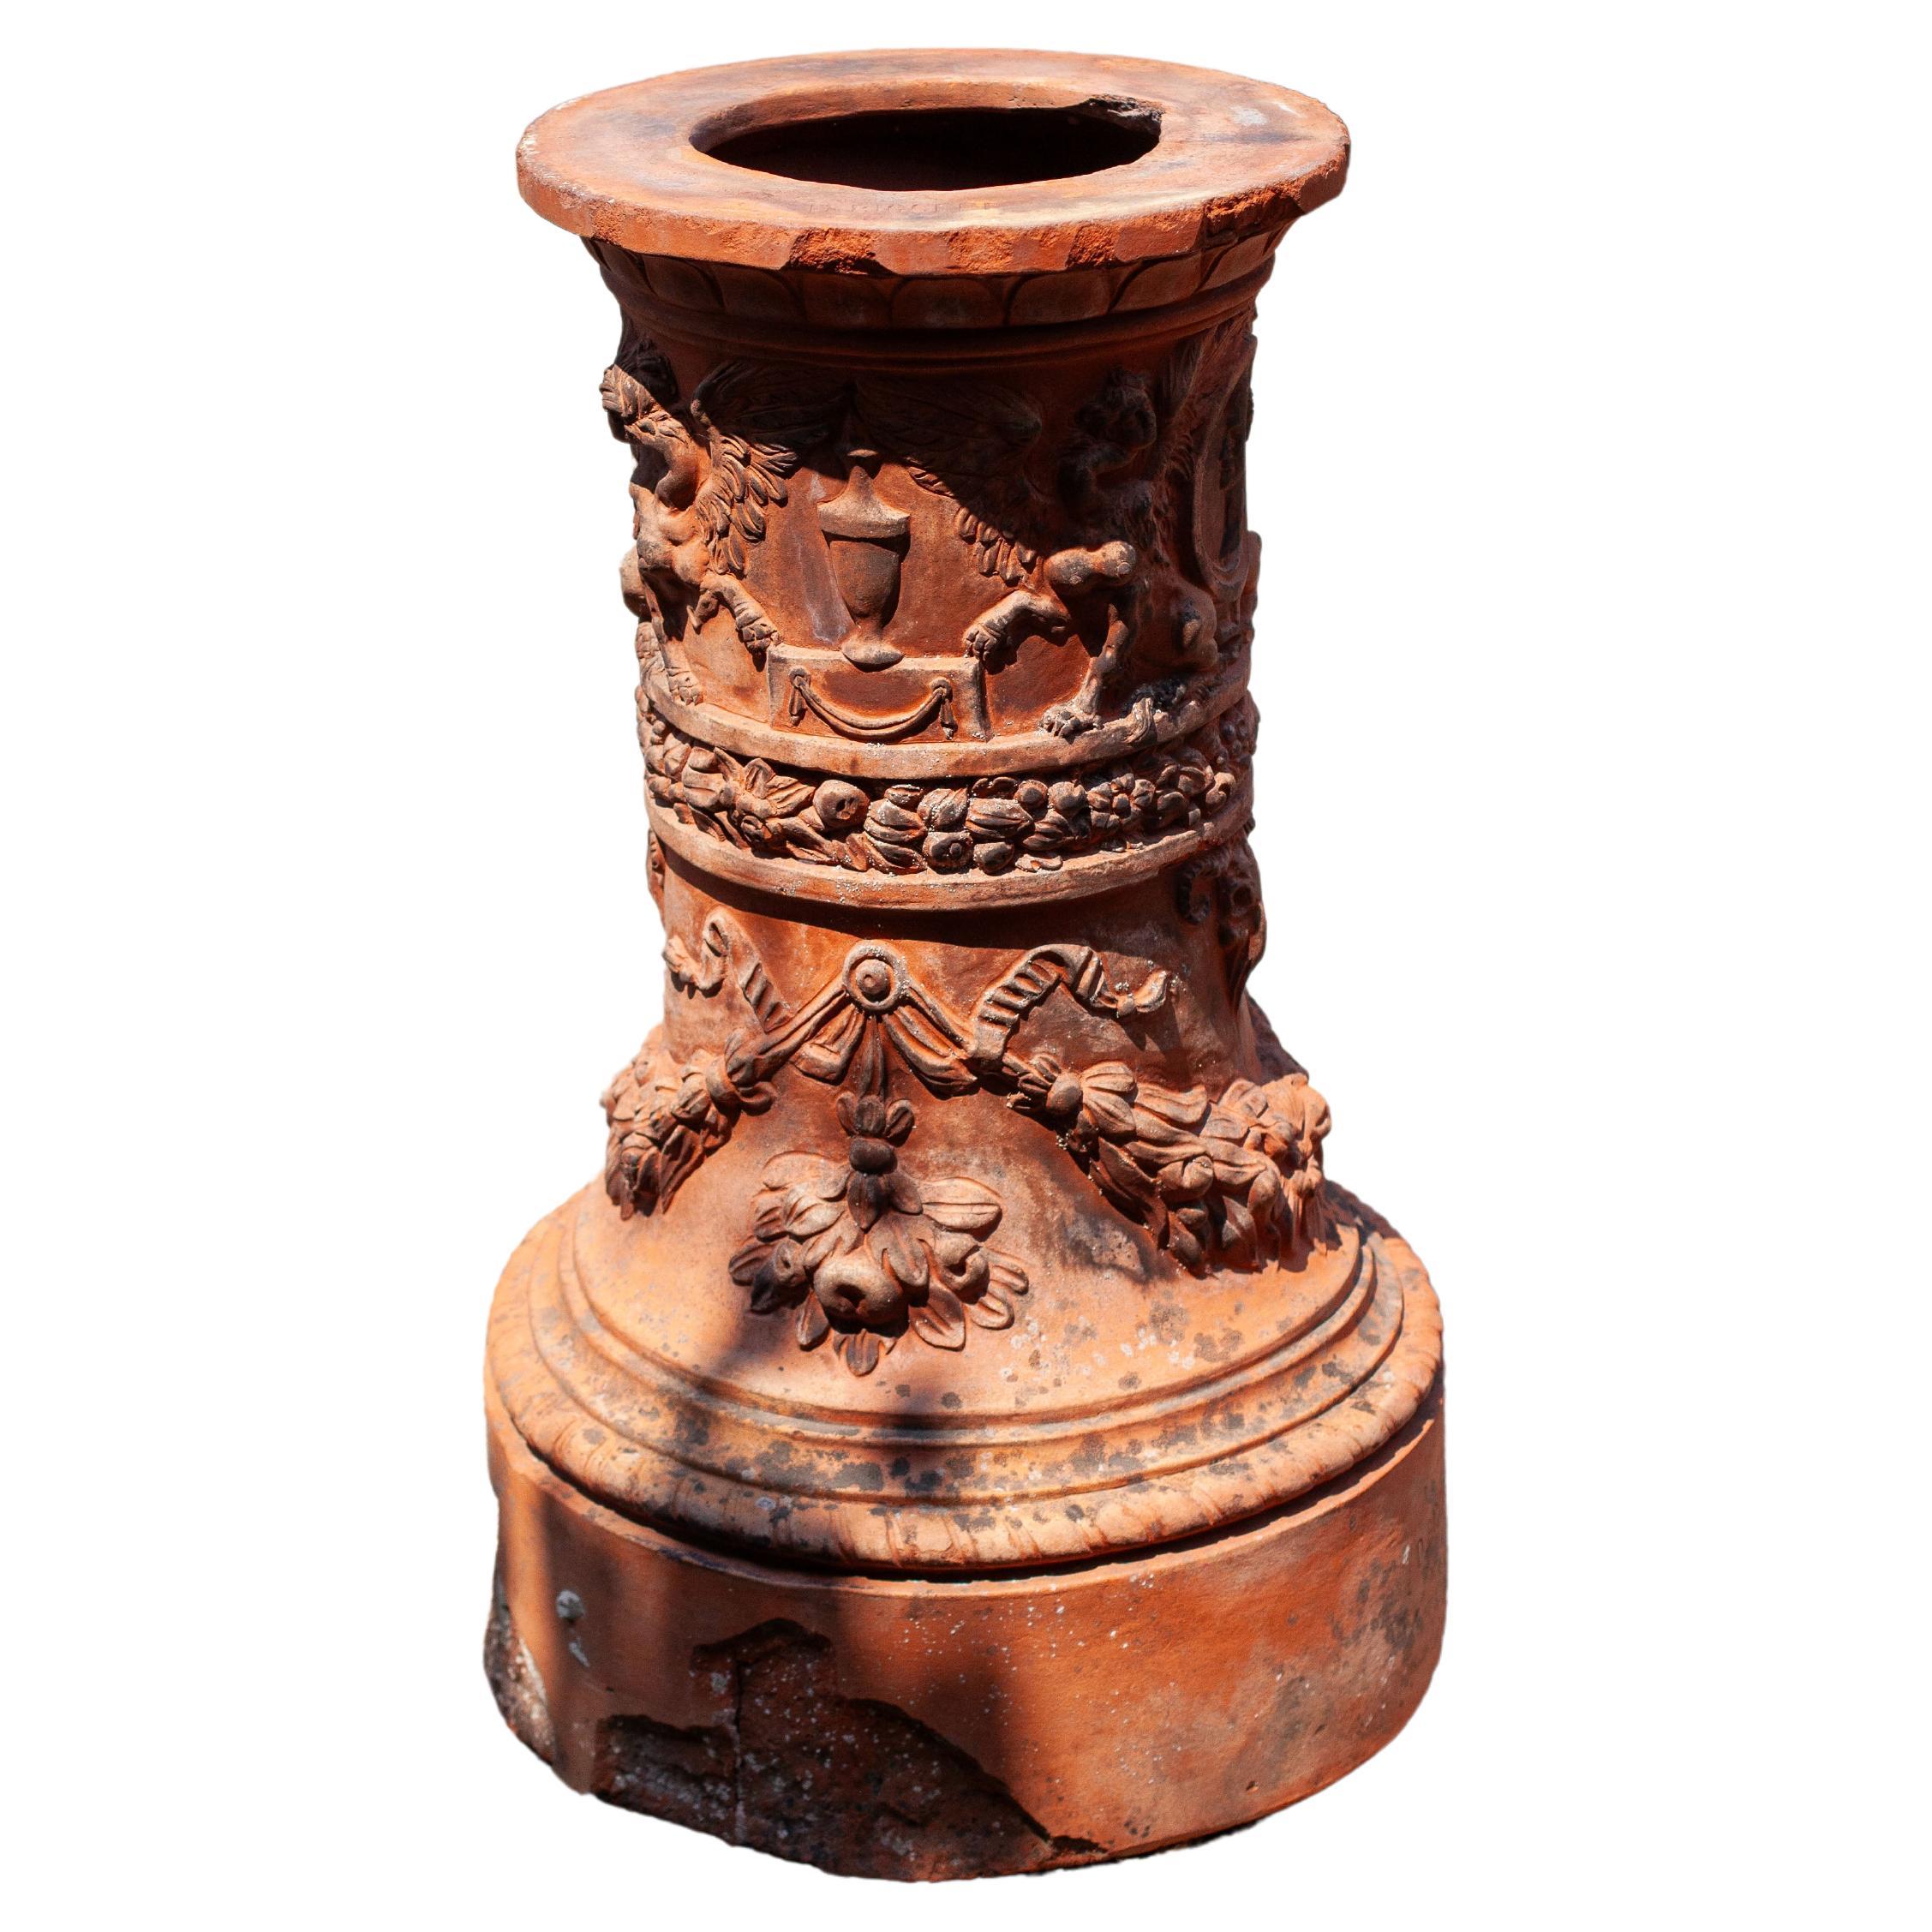 Italian Impruneta Terracotta Pedestal For Sale